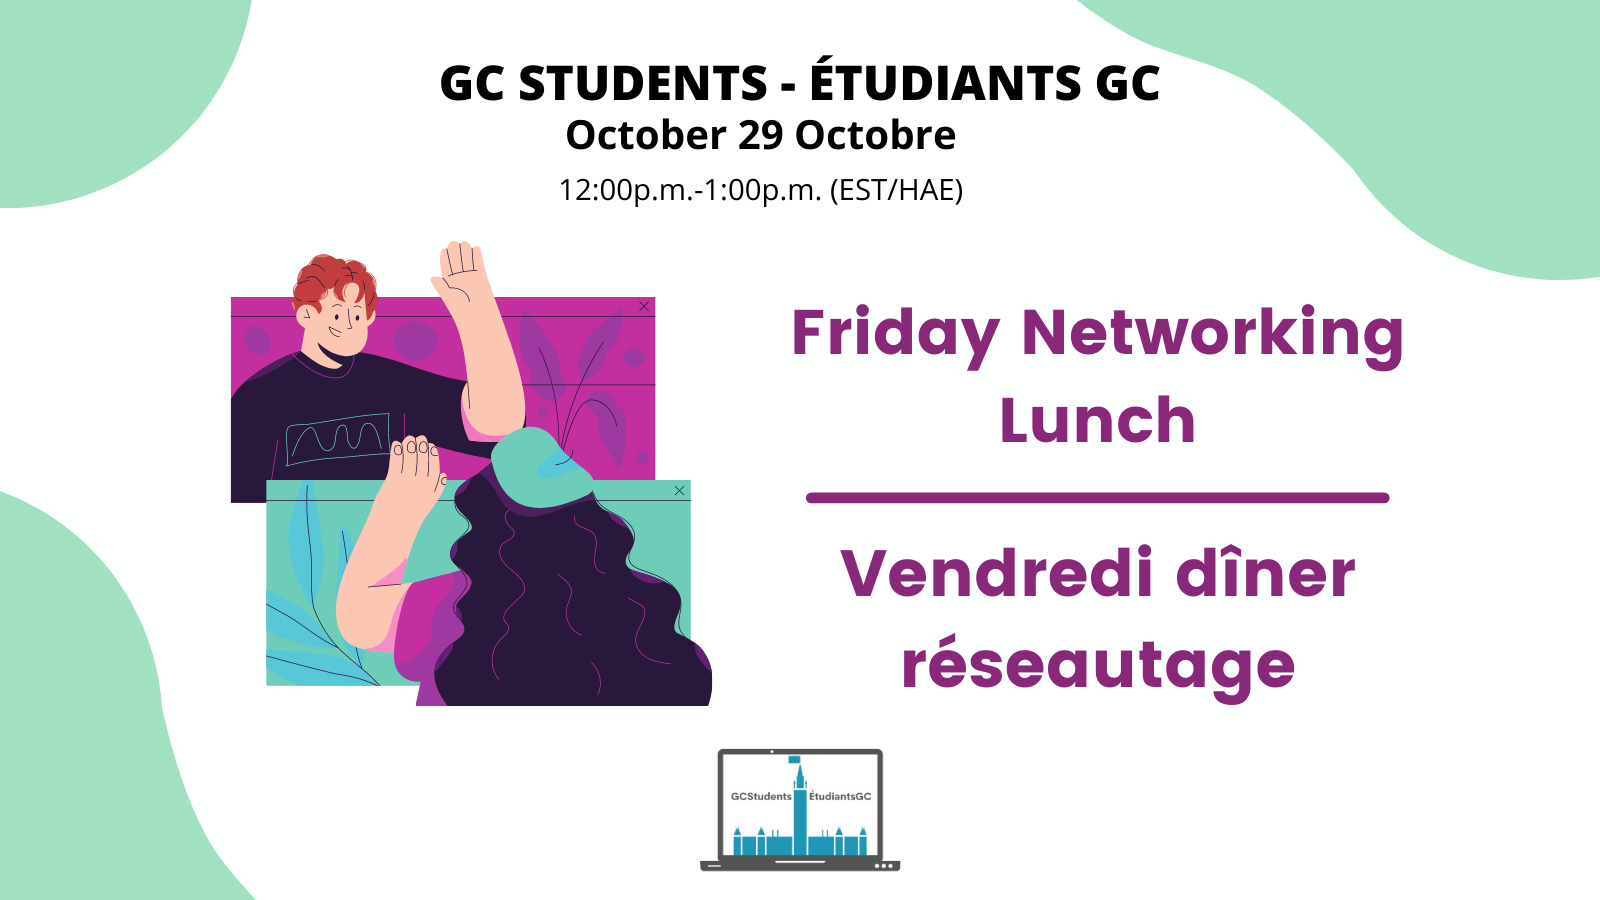 Promo image for October 29, Friday Networking Lunch - Image promo pour Vendredi dîner réseautage du 29 octobre